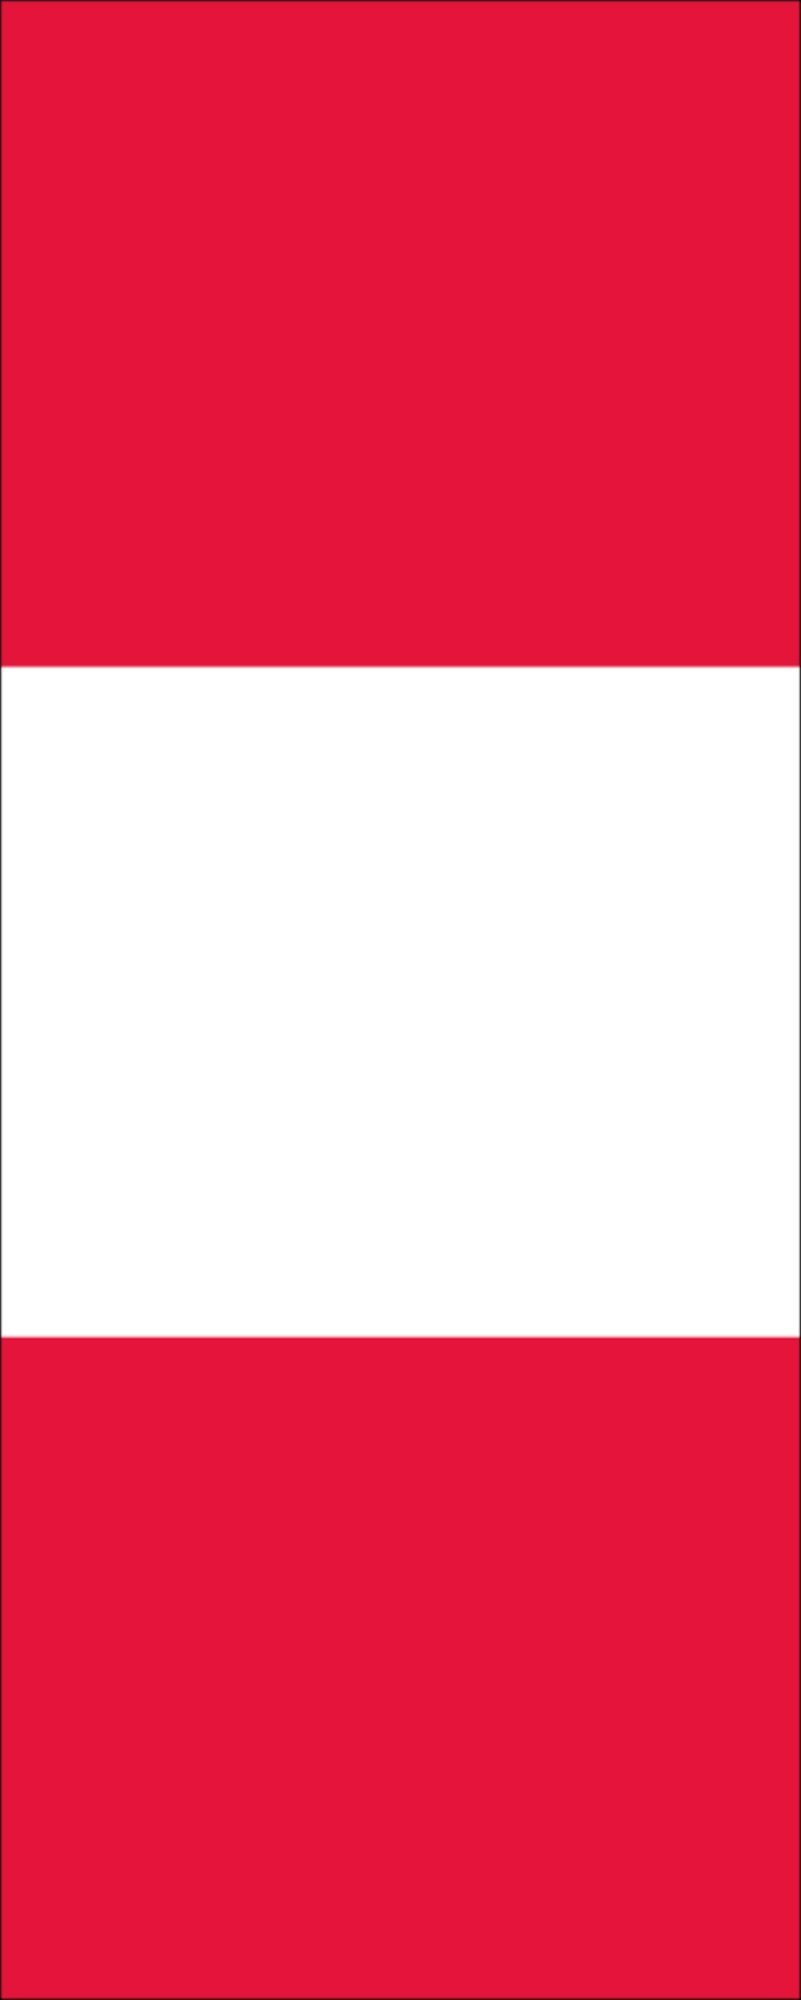 g/m² 160 Hochformat Flagge flaggenmeer Peru